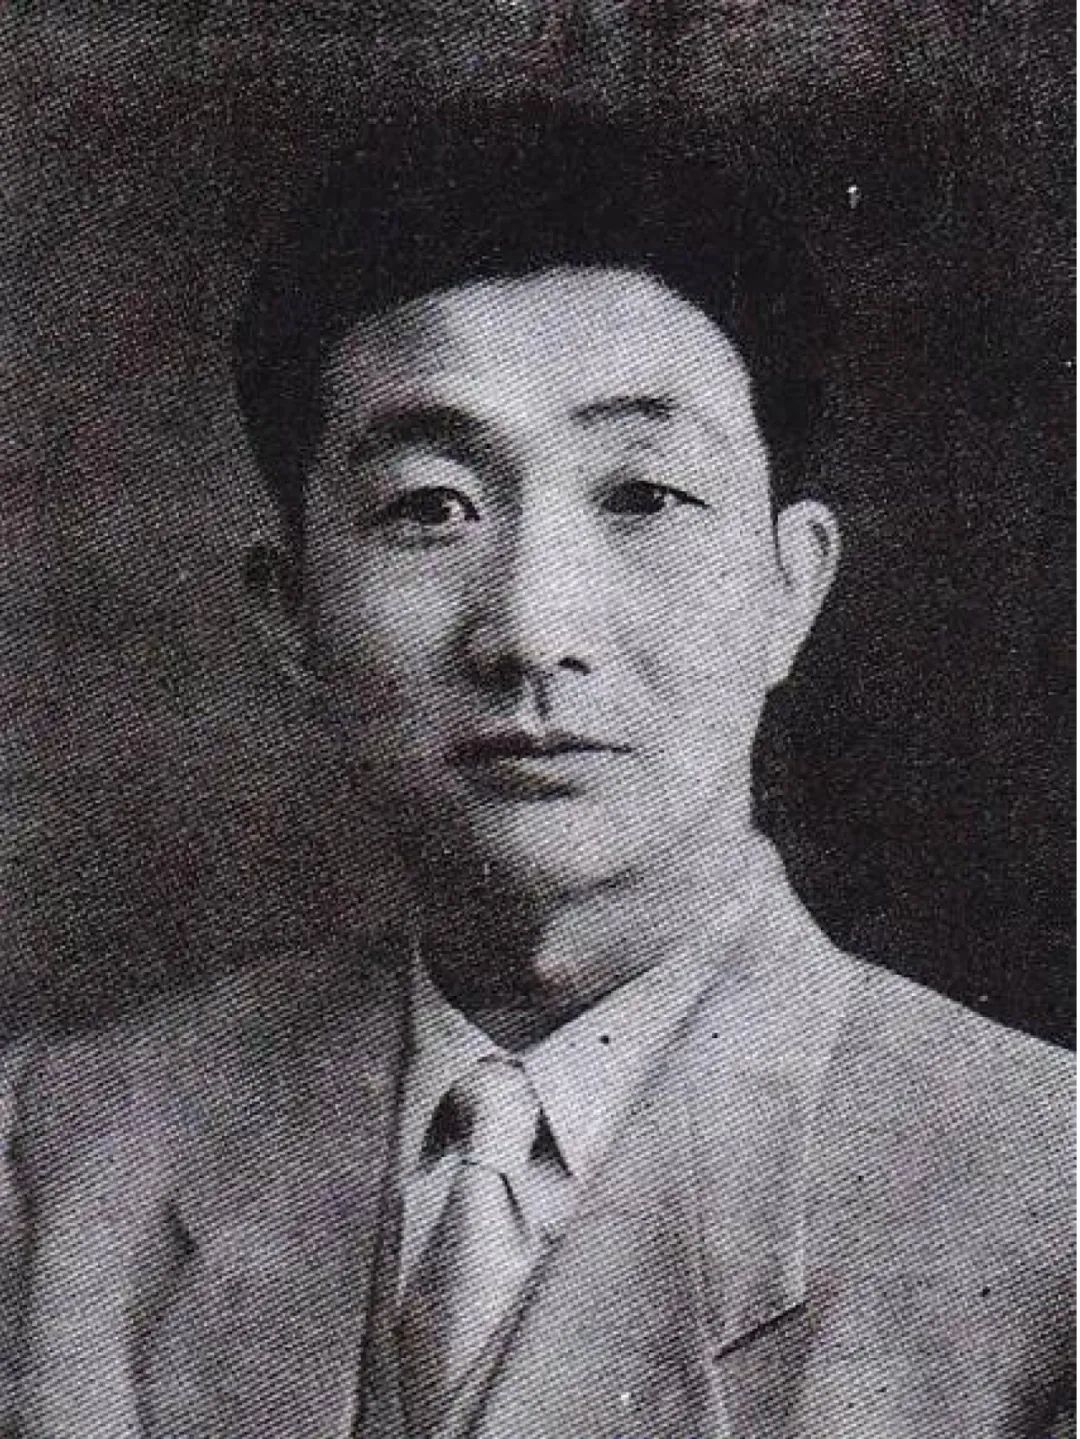 中国海洋气象学科的奠基人之一、海洋气象学家王彬华教授年轻时的照片